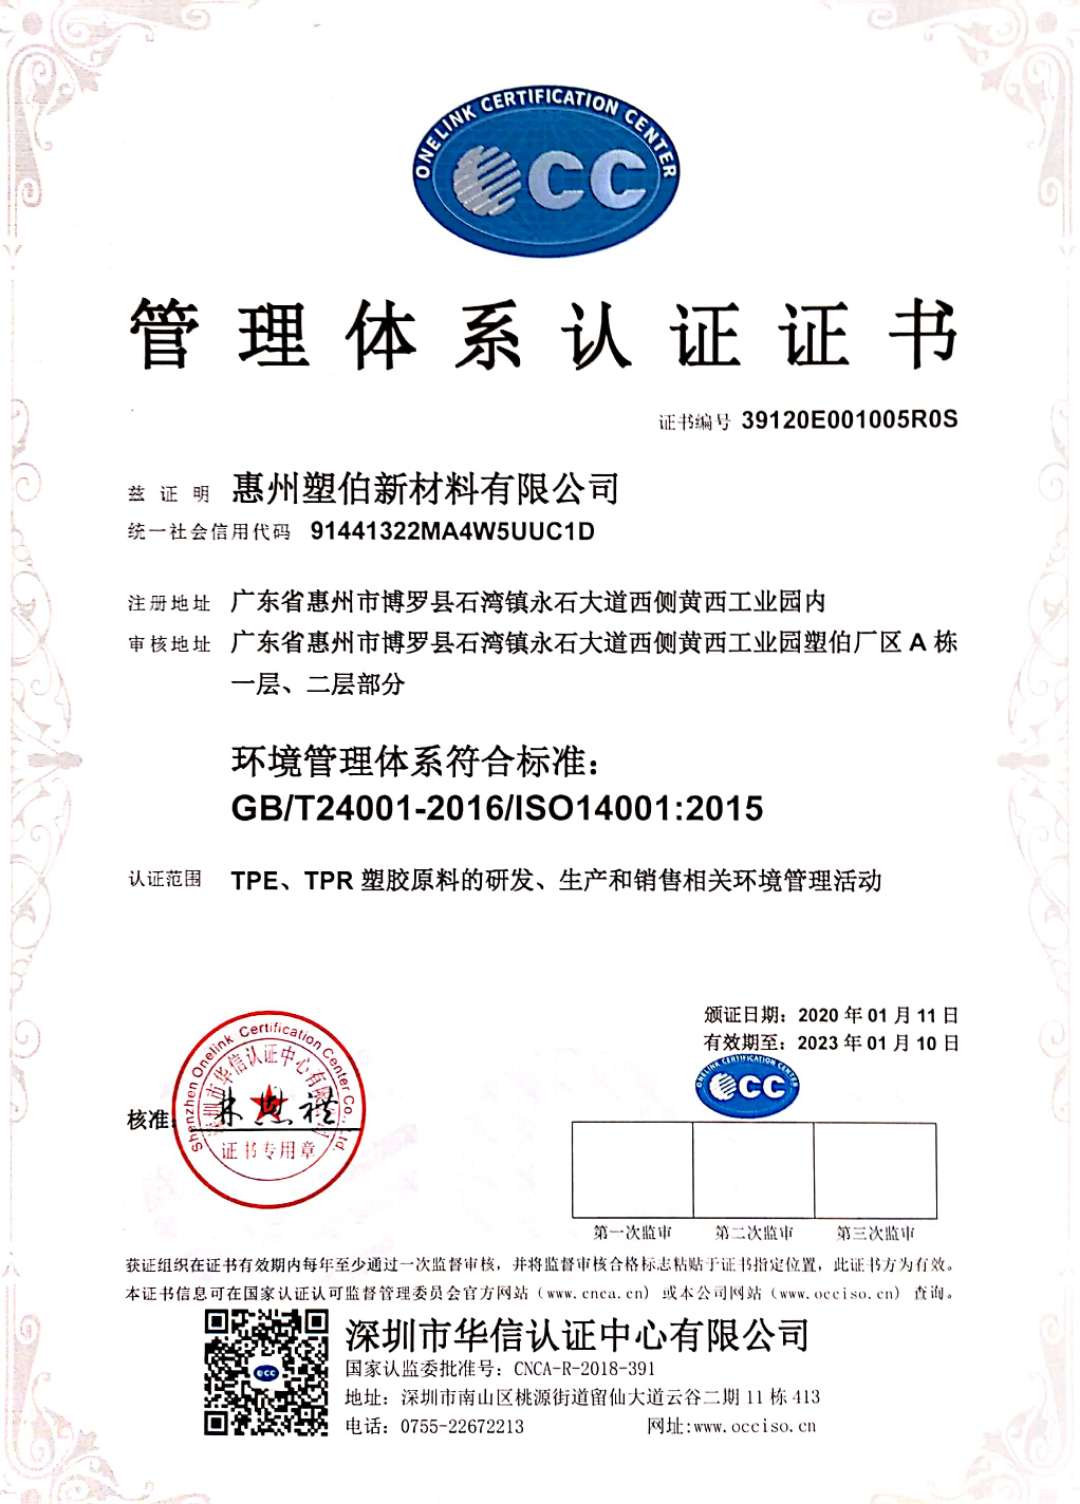 塑伯新材料ISO认证证书-中文版